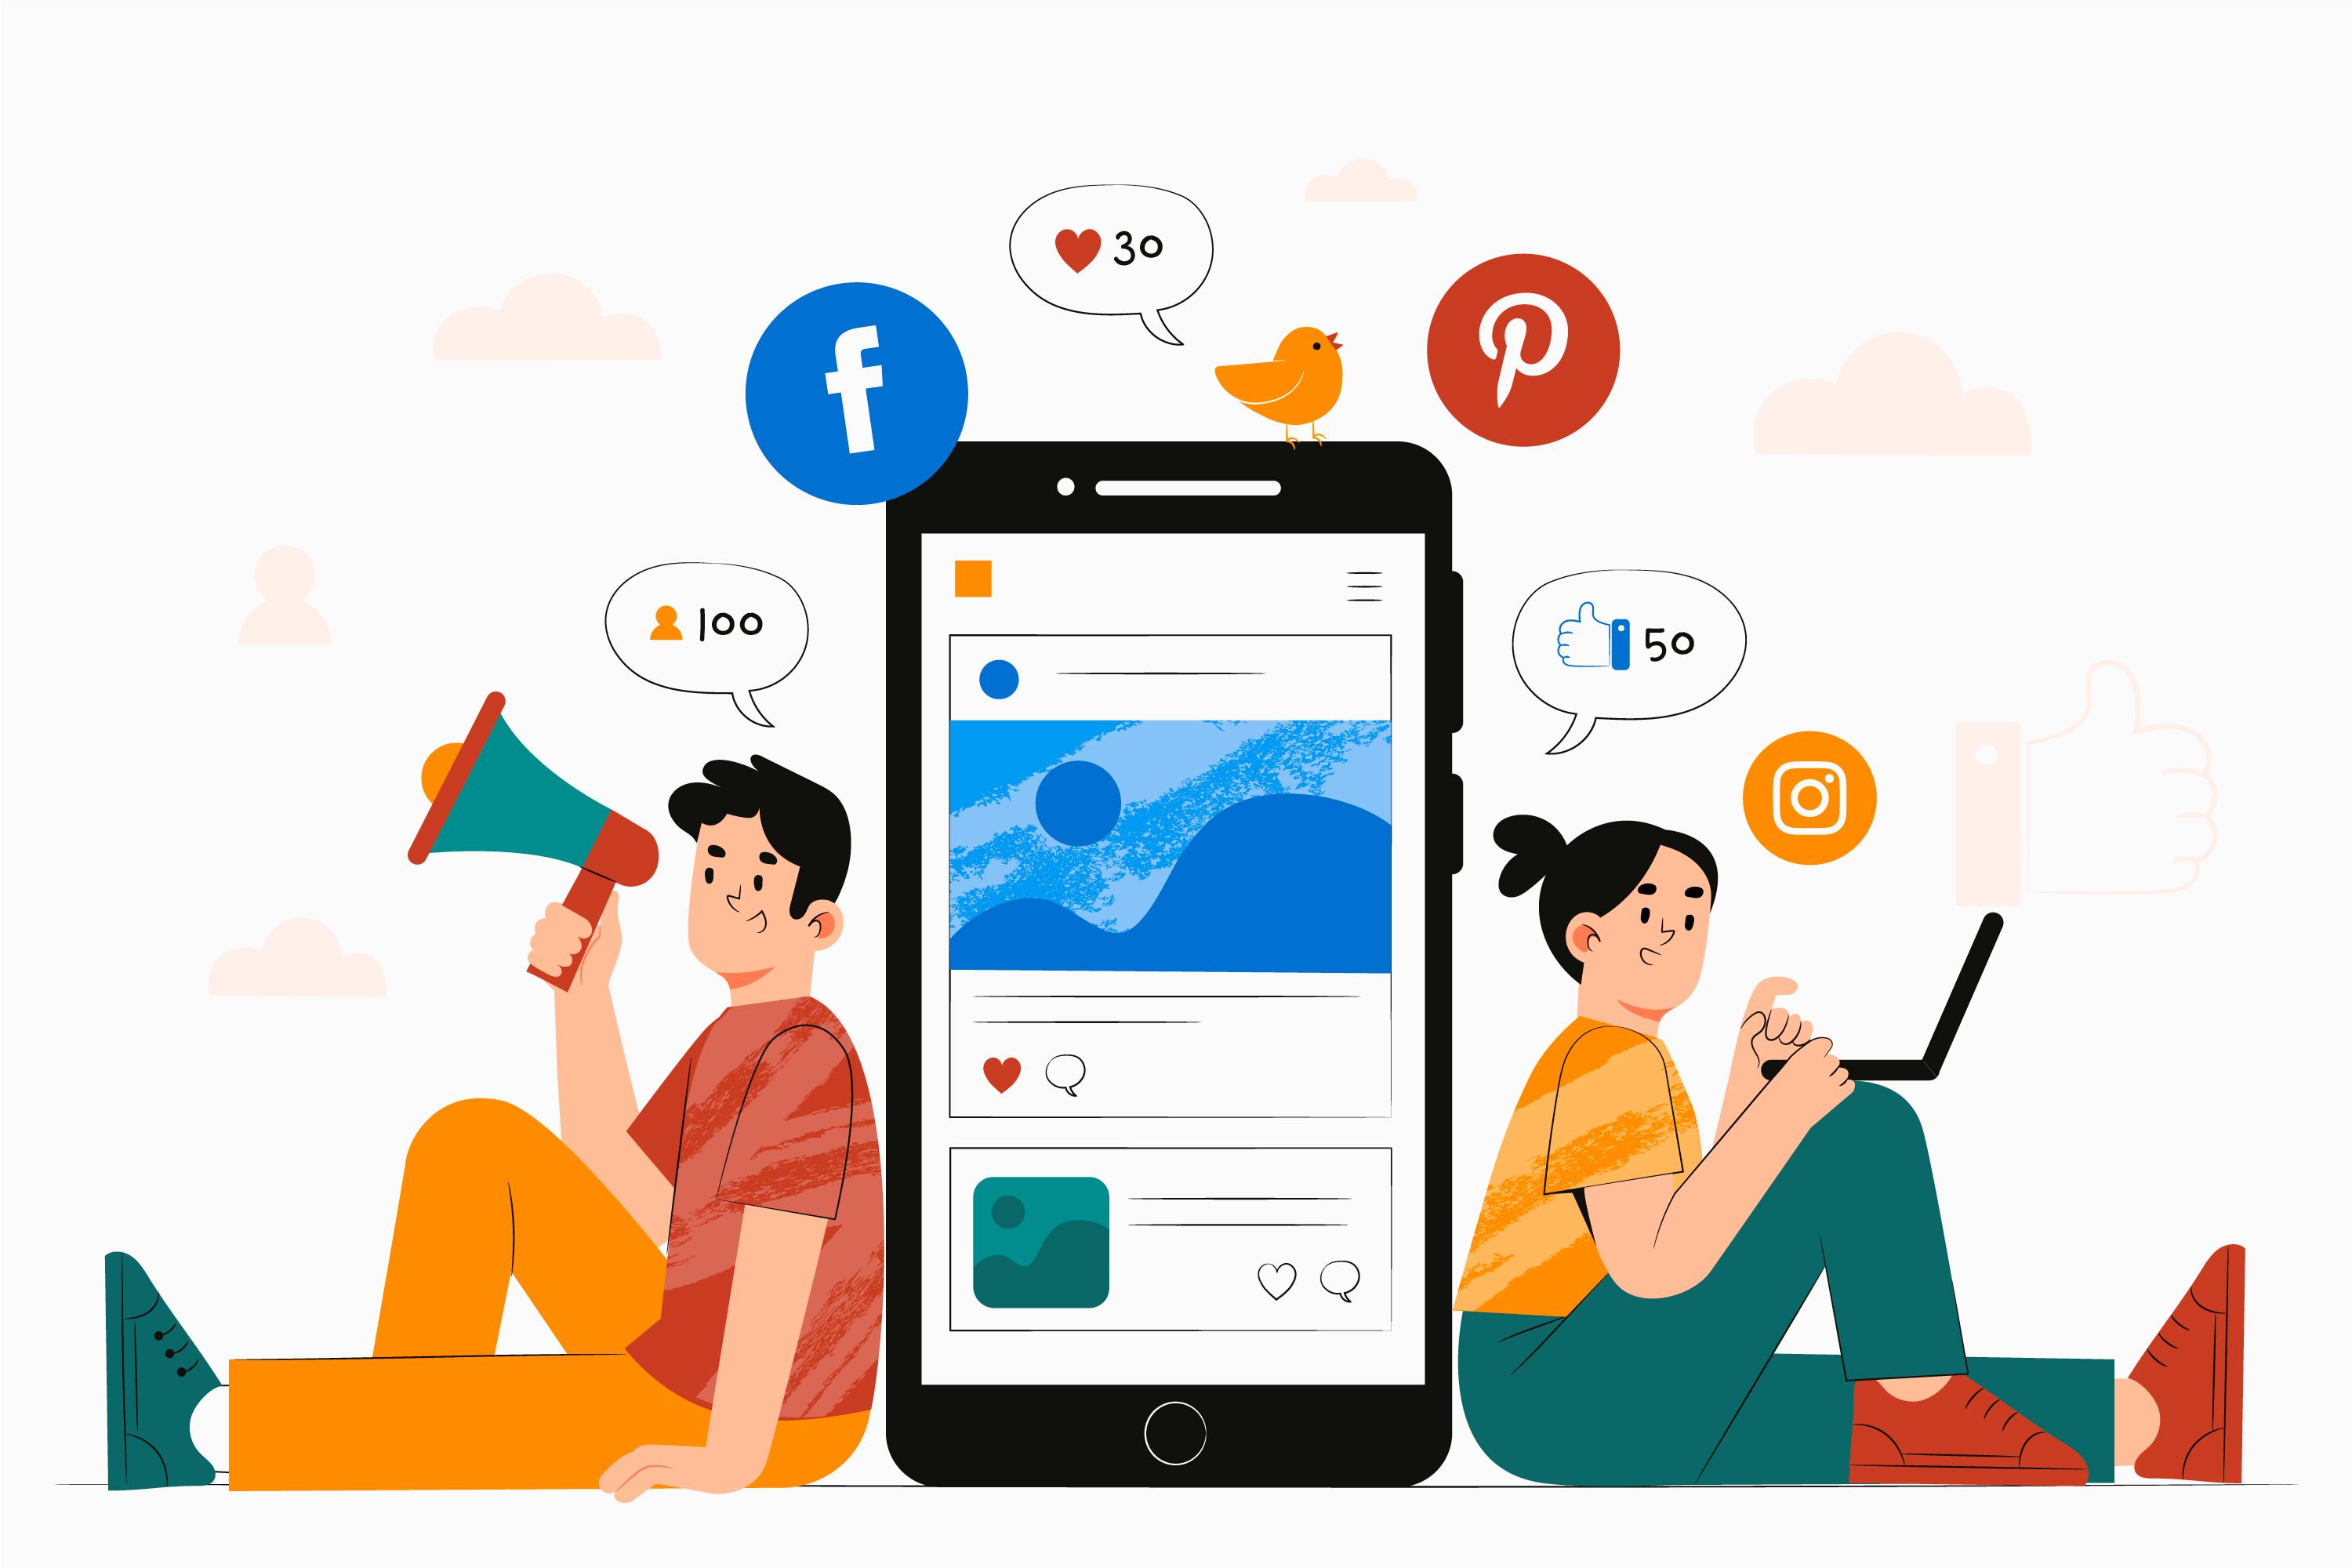 Social Media Marketing1